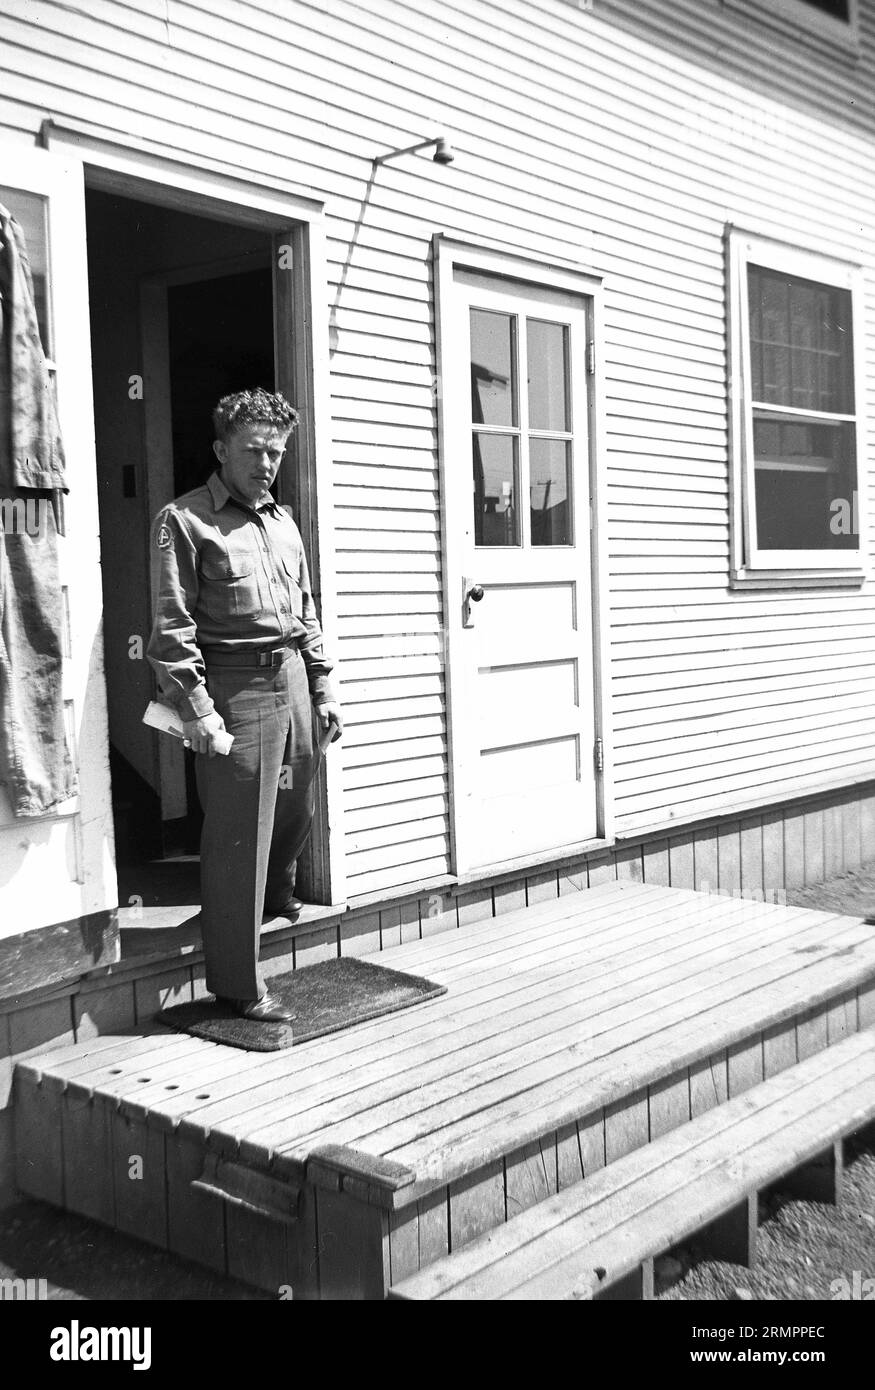 Solider, der in der Tür einer Holzstruktur steht. Mitglieder der 114. Infanteriedivision der US-Armee trainieren im Zweiten Weltkrieg gegen Deutschland in Europa. Stockfoto